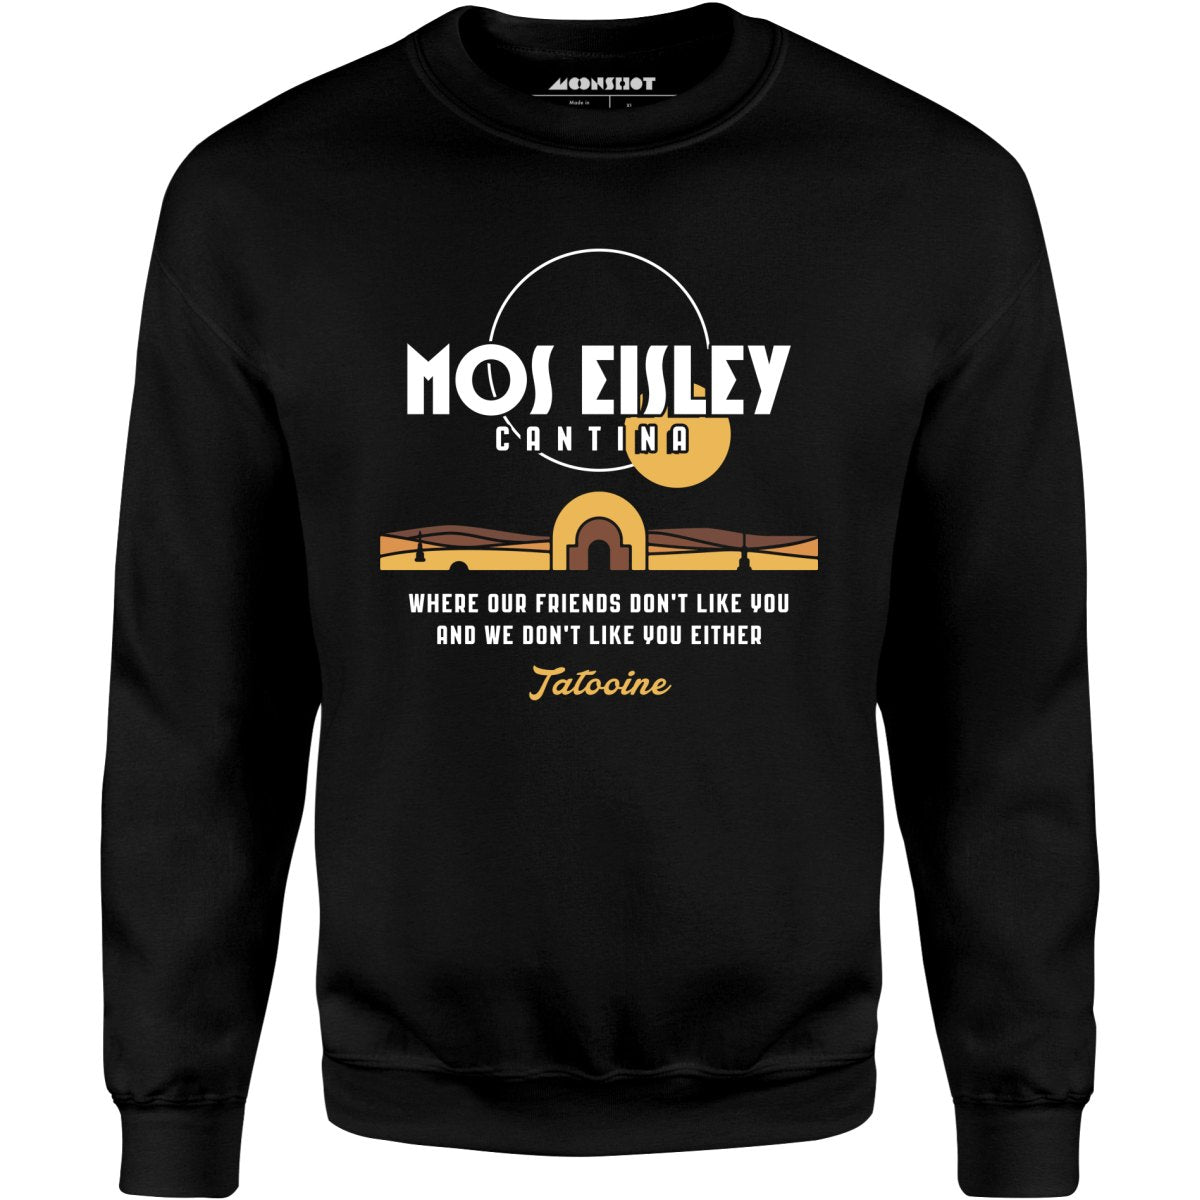 Mos Eisley Cantina - Unisex Sweatshirt